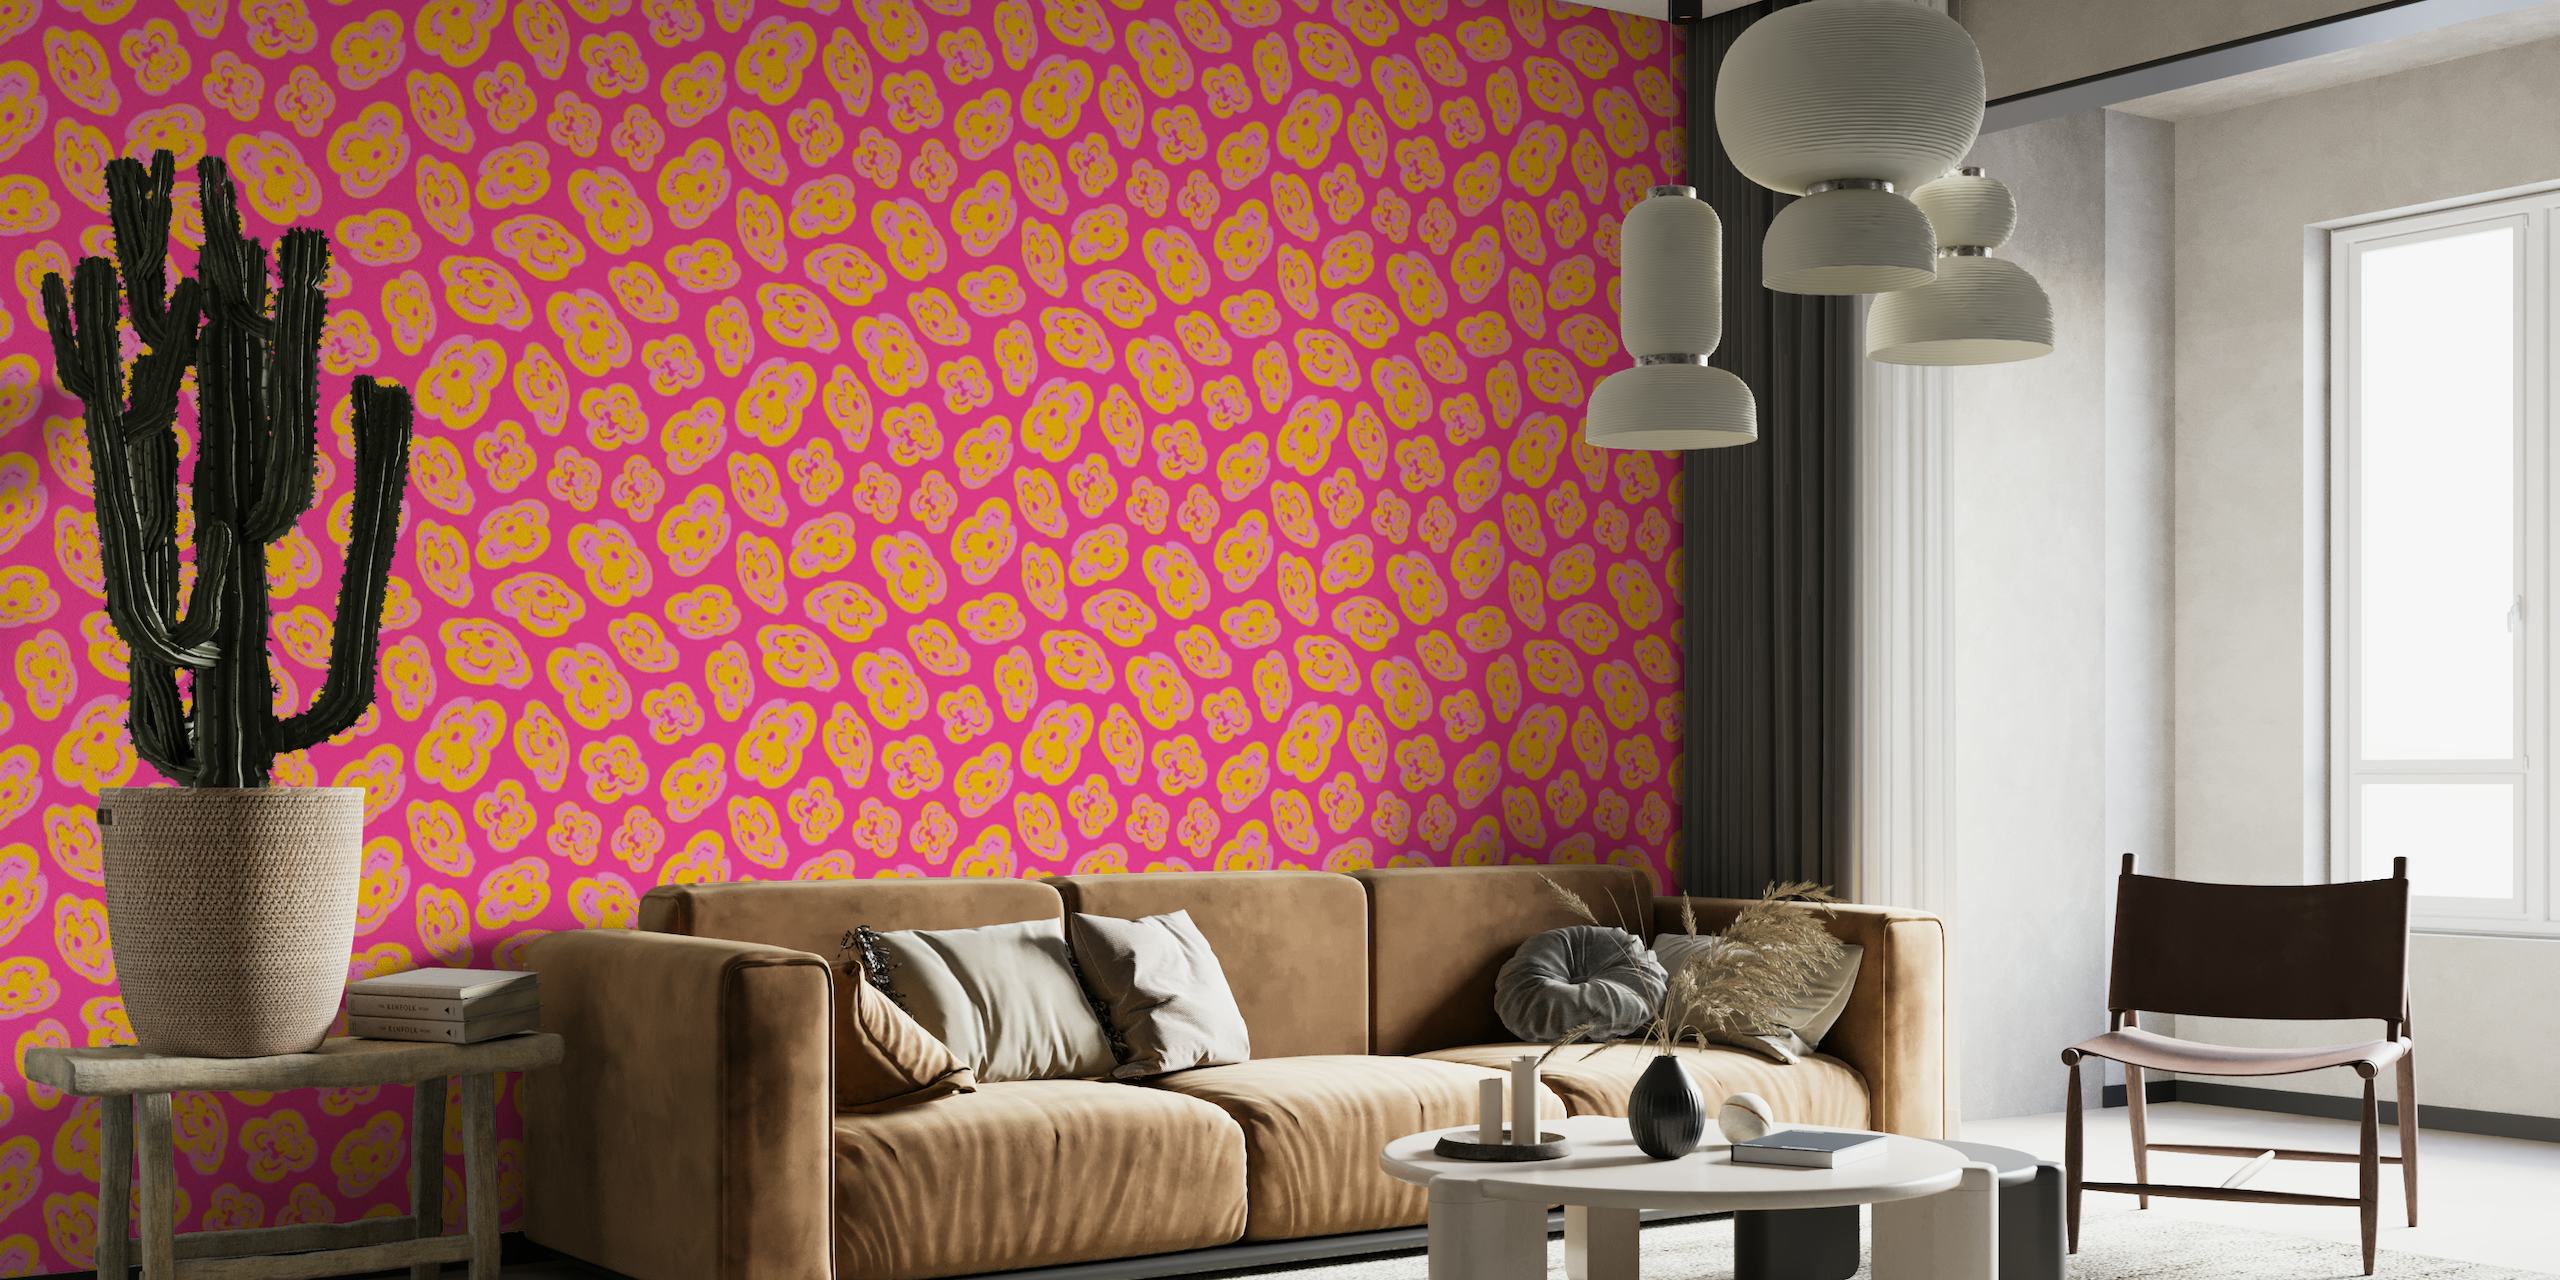 Motivi astratti di gigli fluttuanti nei toni del giallo e del rosa su una parete con sfondo fucsia